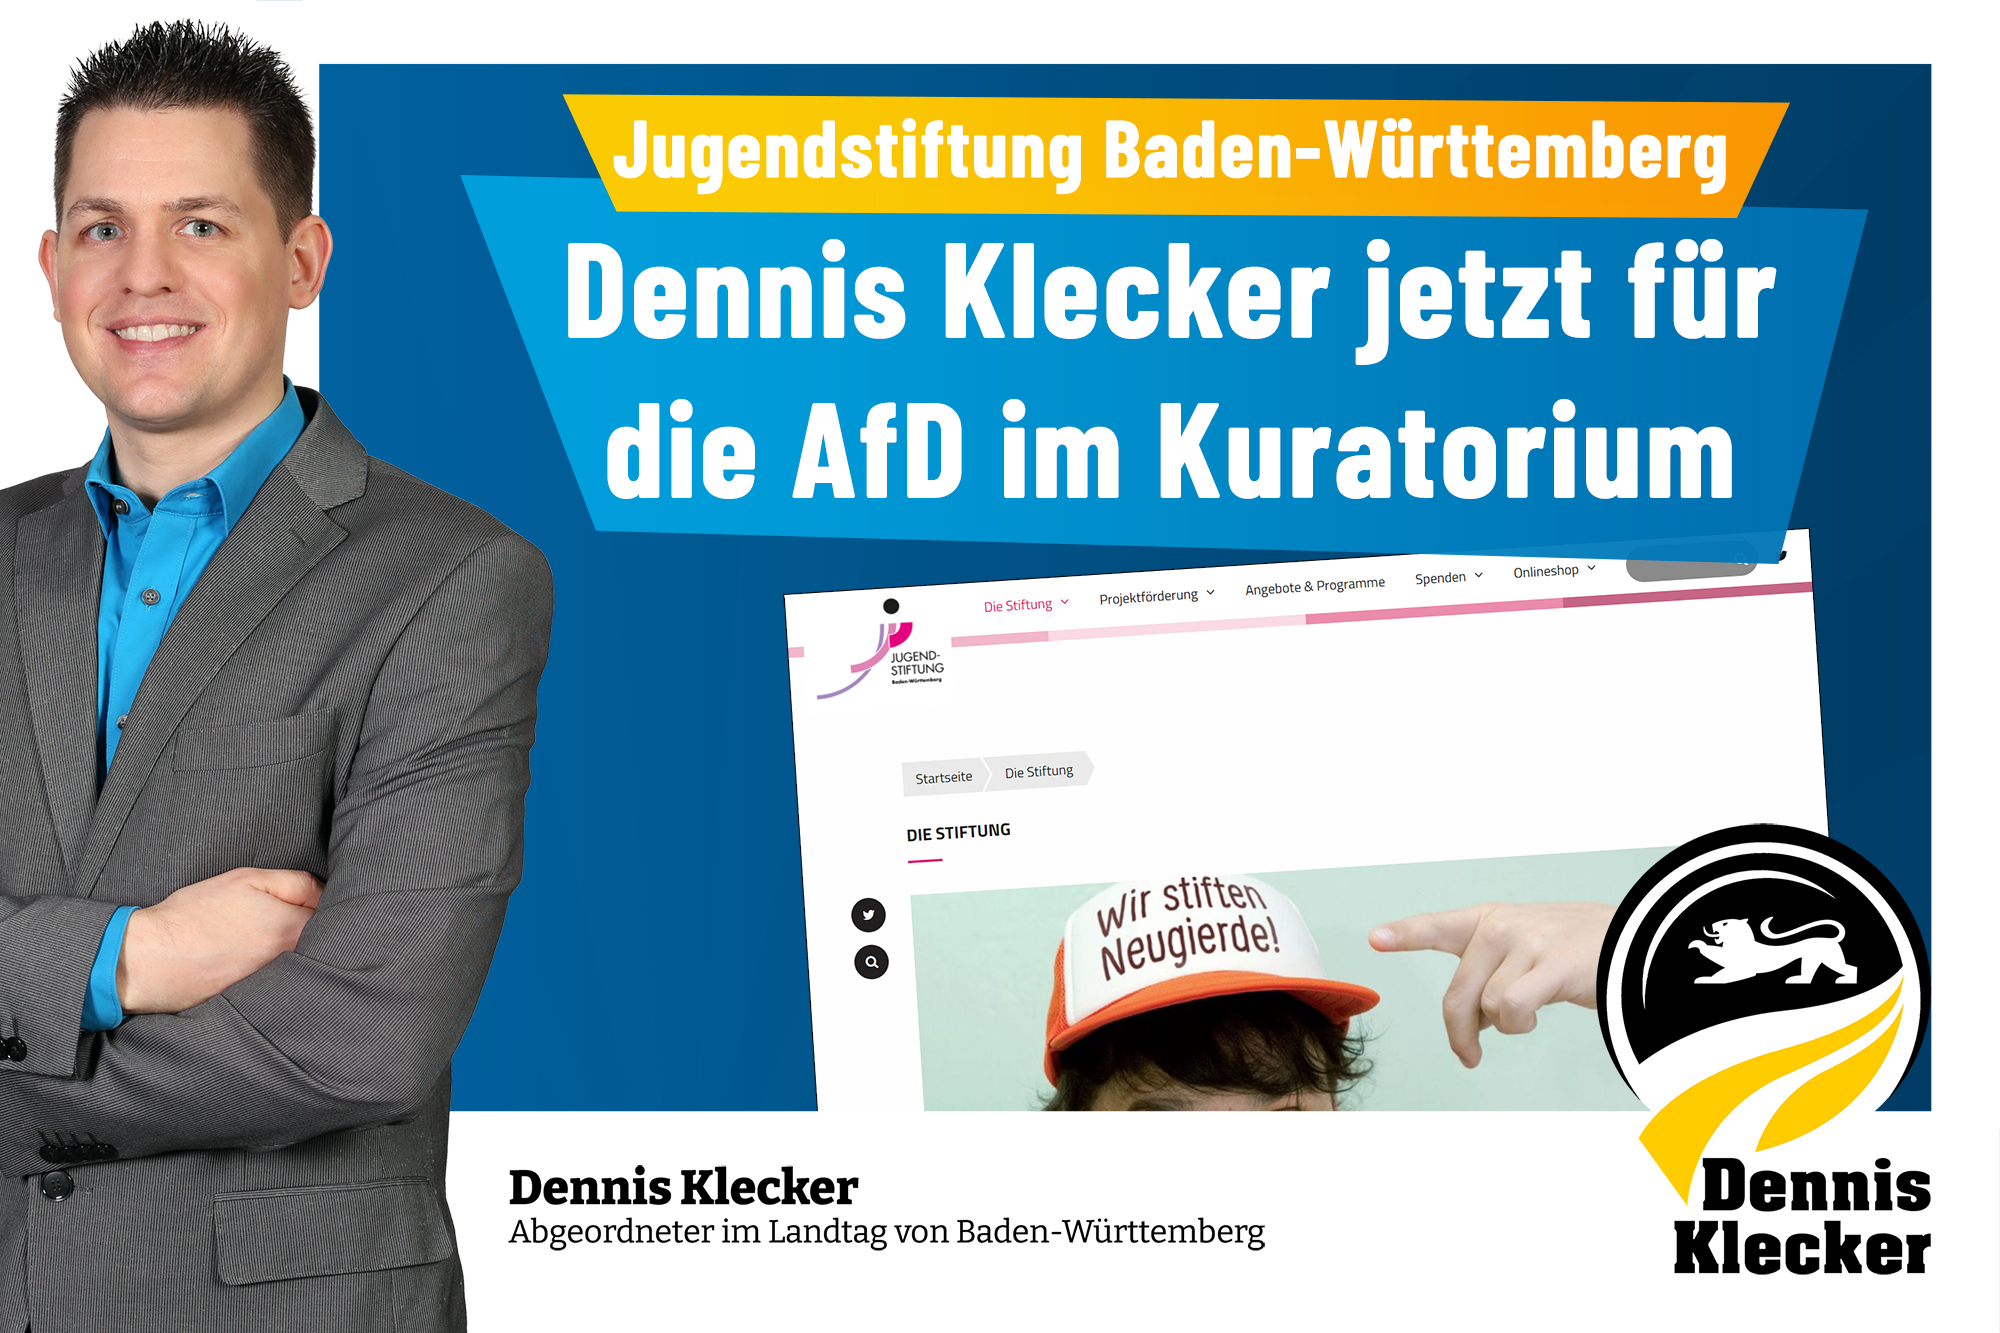 Dennis Klecker jetzt im Kuratorium der Jugendstiftung Baden-Württemberg